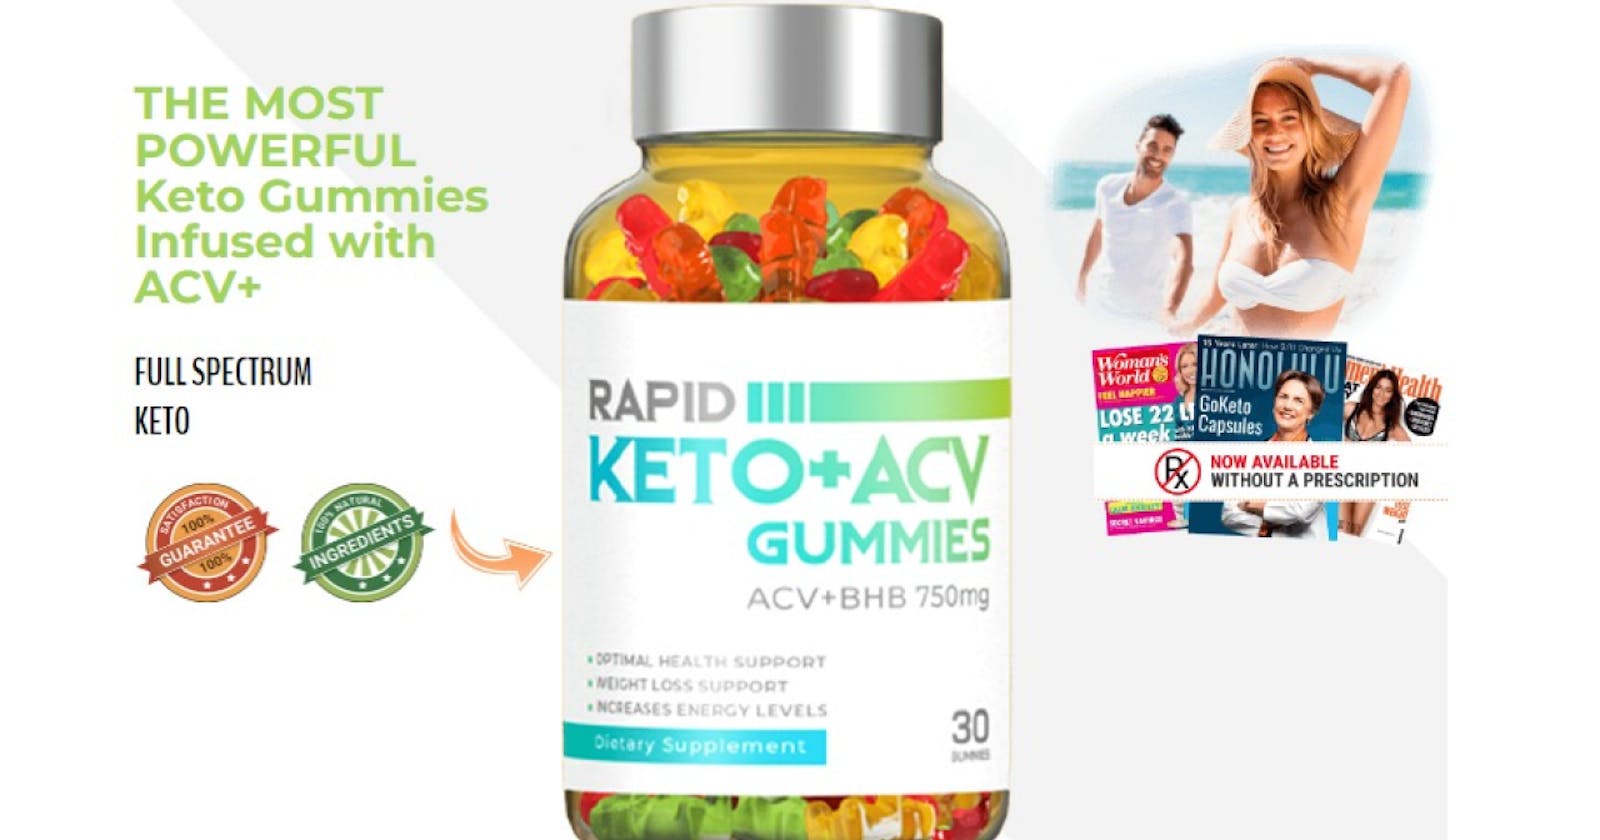 Rapid Keto ACV Gummies Benefits, Usage, and More (USA)